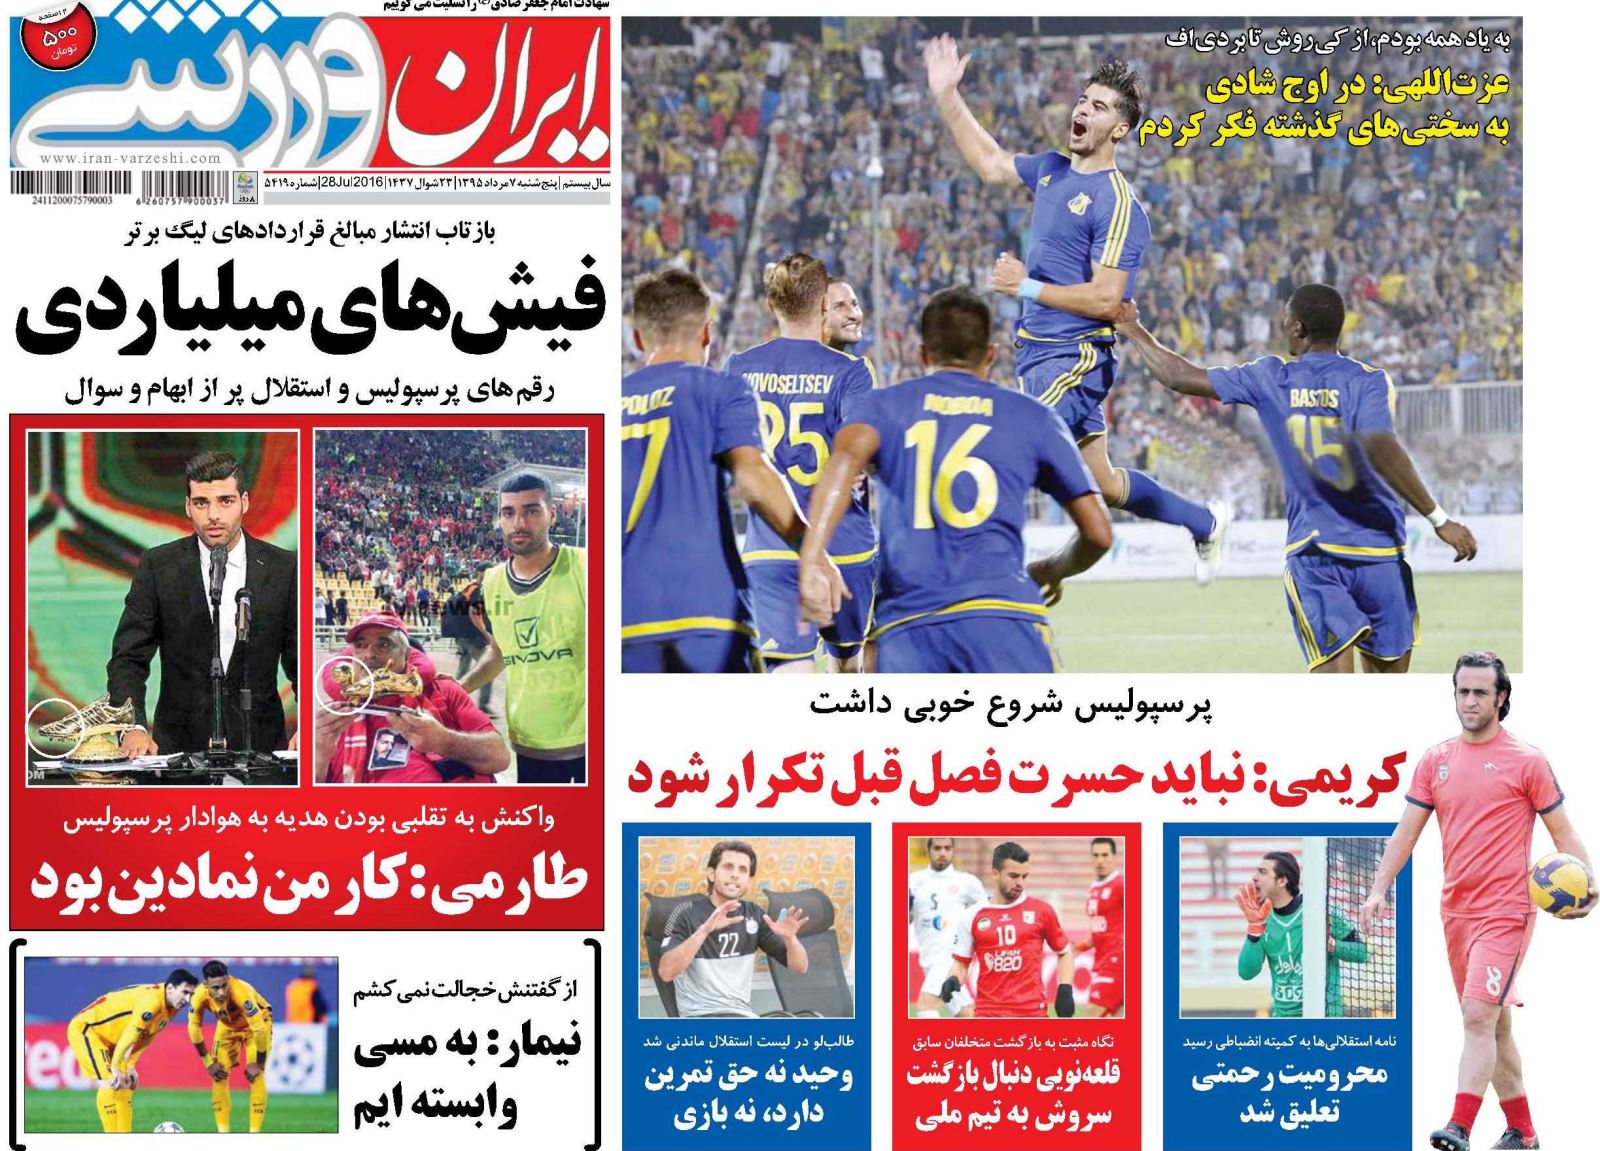 جلد ایران ورزشی/پنج شنبه 7 مرداد 95